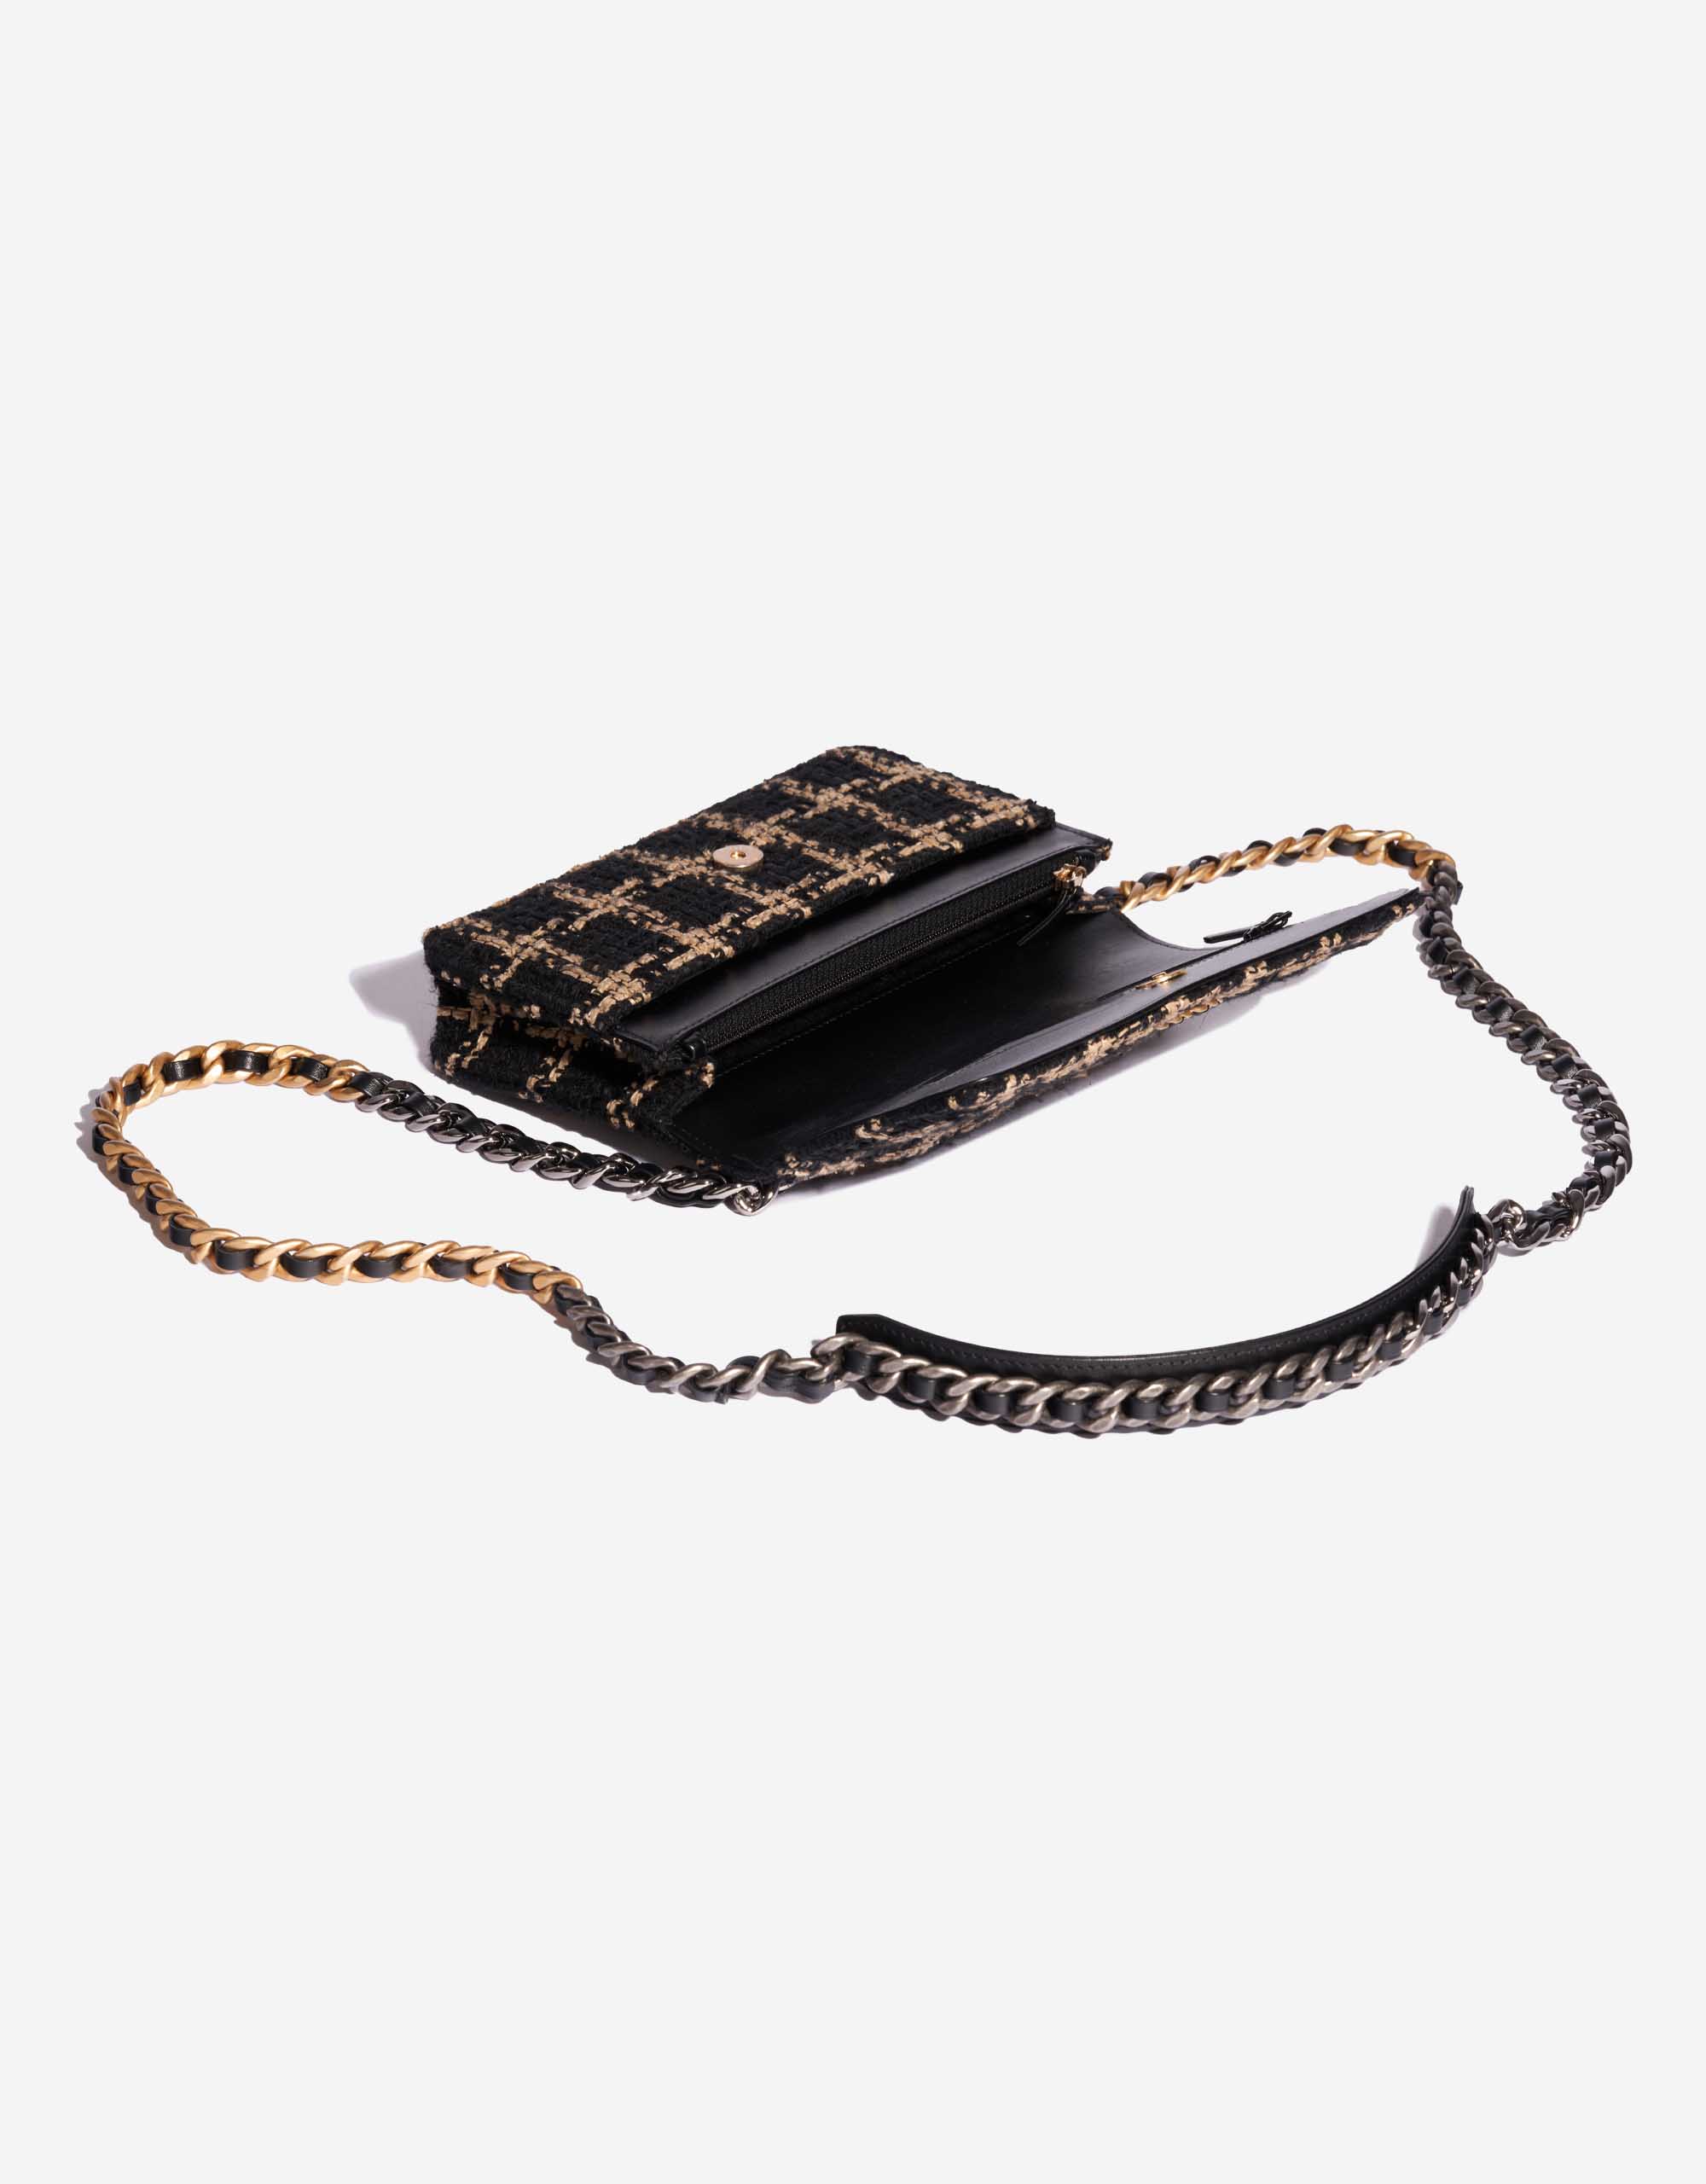 Pre-owned Chanel bag 19 WOC Tweed Black / Beige Beige, Black Inside | Sell your designer bag on Saclab.com